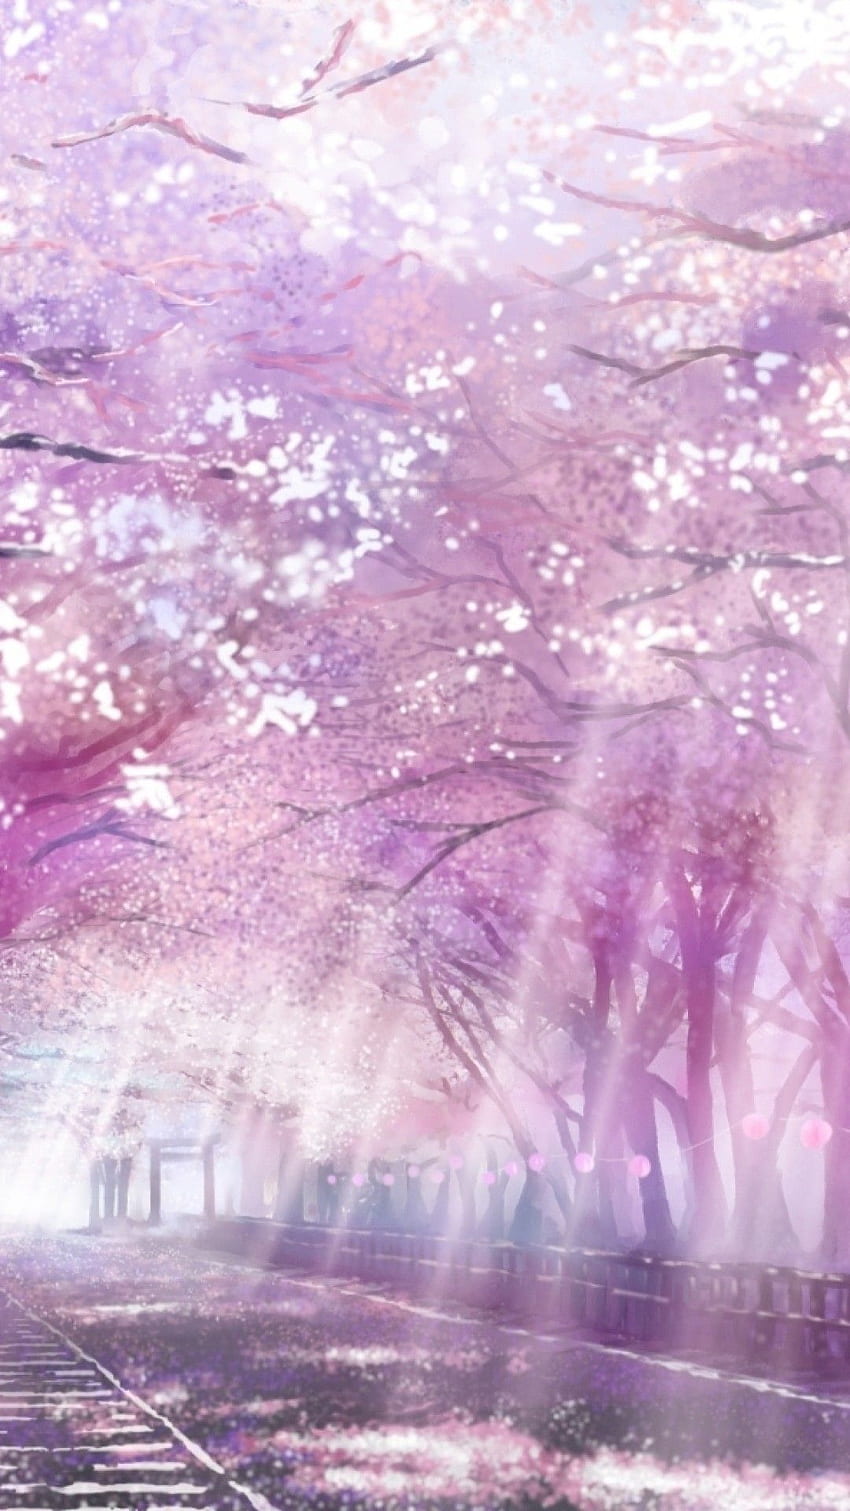 Sự kết hợp tuyệt vời giữa kiến trúc và hoa anh đào trong anime Building Cherry Blossoms Isou Nagi iPhone chắc chắn sẽ khiến bạn say mê ngay từ cái nhìn đầu tiên. Với chất lượng độ phân giải cao, bạn sẽ có được trải nghiệm tuyệt vời để trang trí cho màn hình điện thoại của mình.